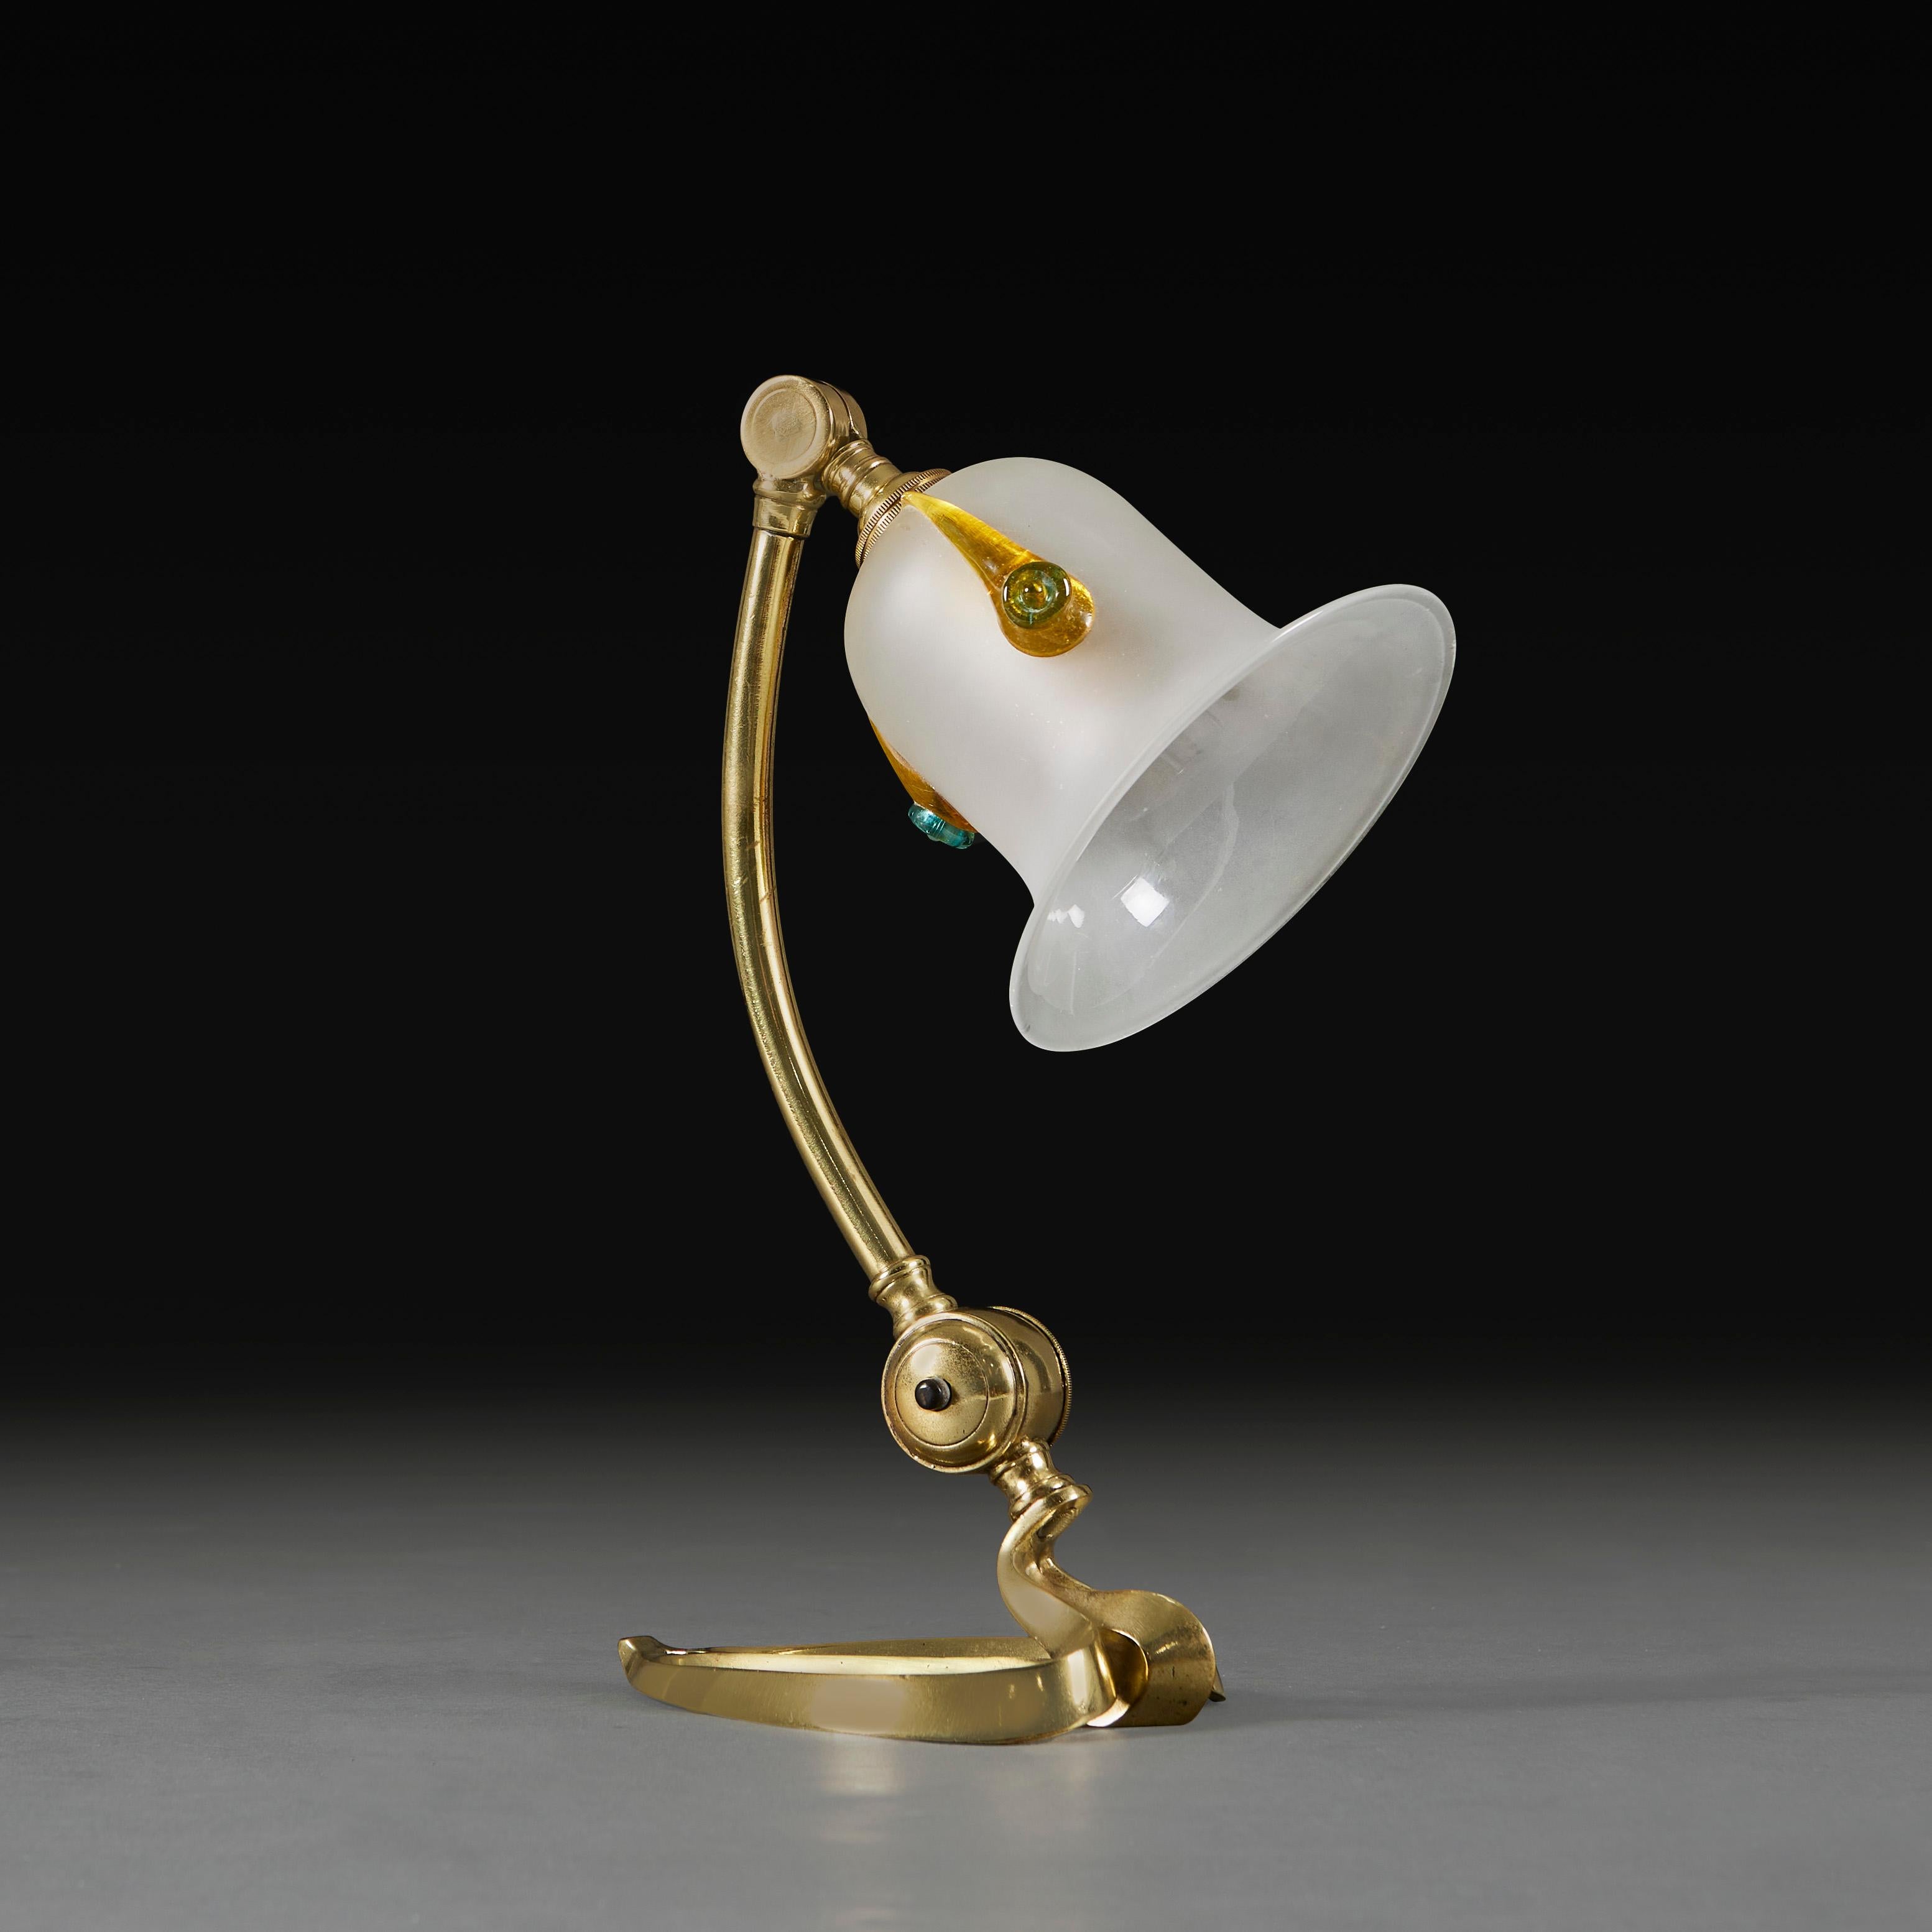 Angleterre, vers 1900

Lampe articulée en laiton avec base en forme de cœur, avec vis en laiton au niveau du col, à utiliser comme lampe de bureau ou à fixer au mur. Attribué à W.A.S Benson. 

Remarque : ce produit est actuellement câblé pour le